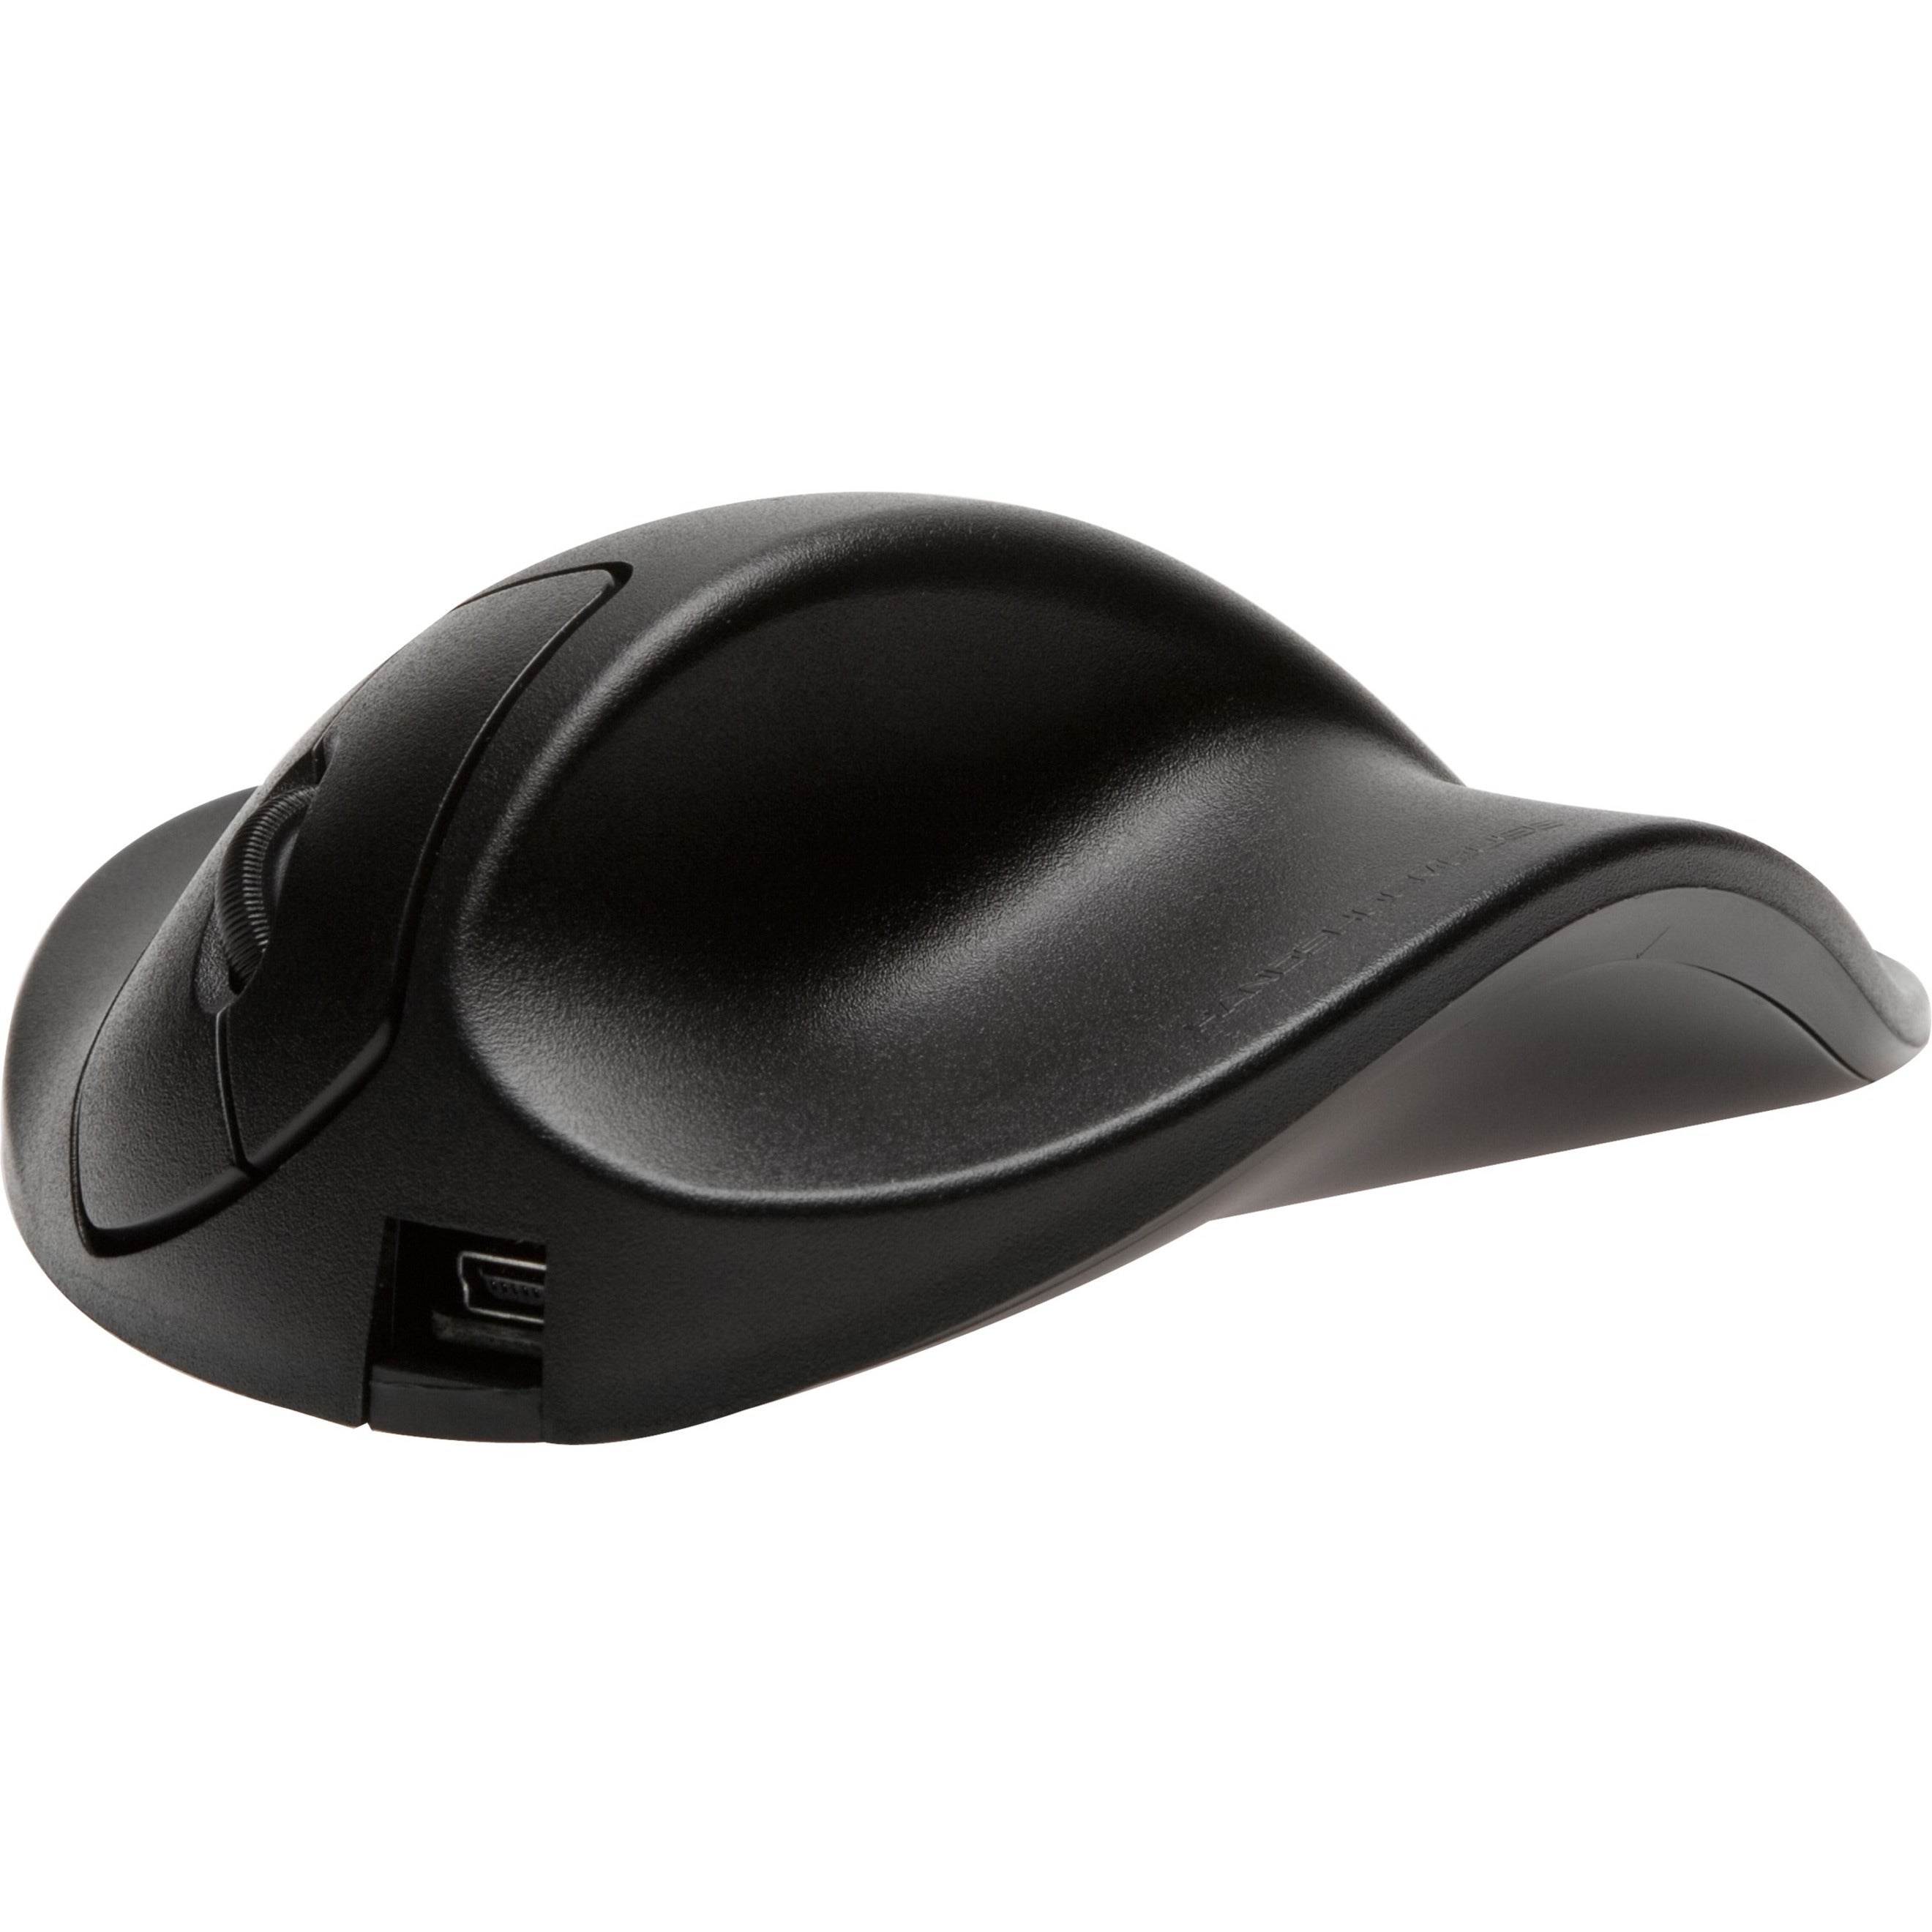 HandShoeMouse: ハンドシューマウス L2WB-LC Mouse: L2WB-LC マウス Ergonomic Fit: エルゴノミックフィット Optical Scroller: 光学式スクローラー USB 2.0: USB 2.0